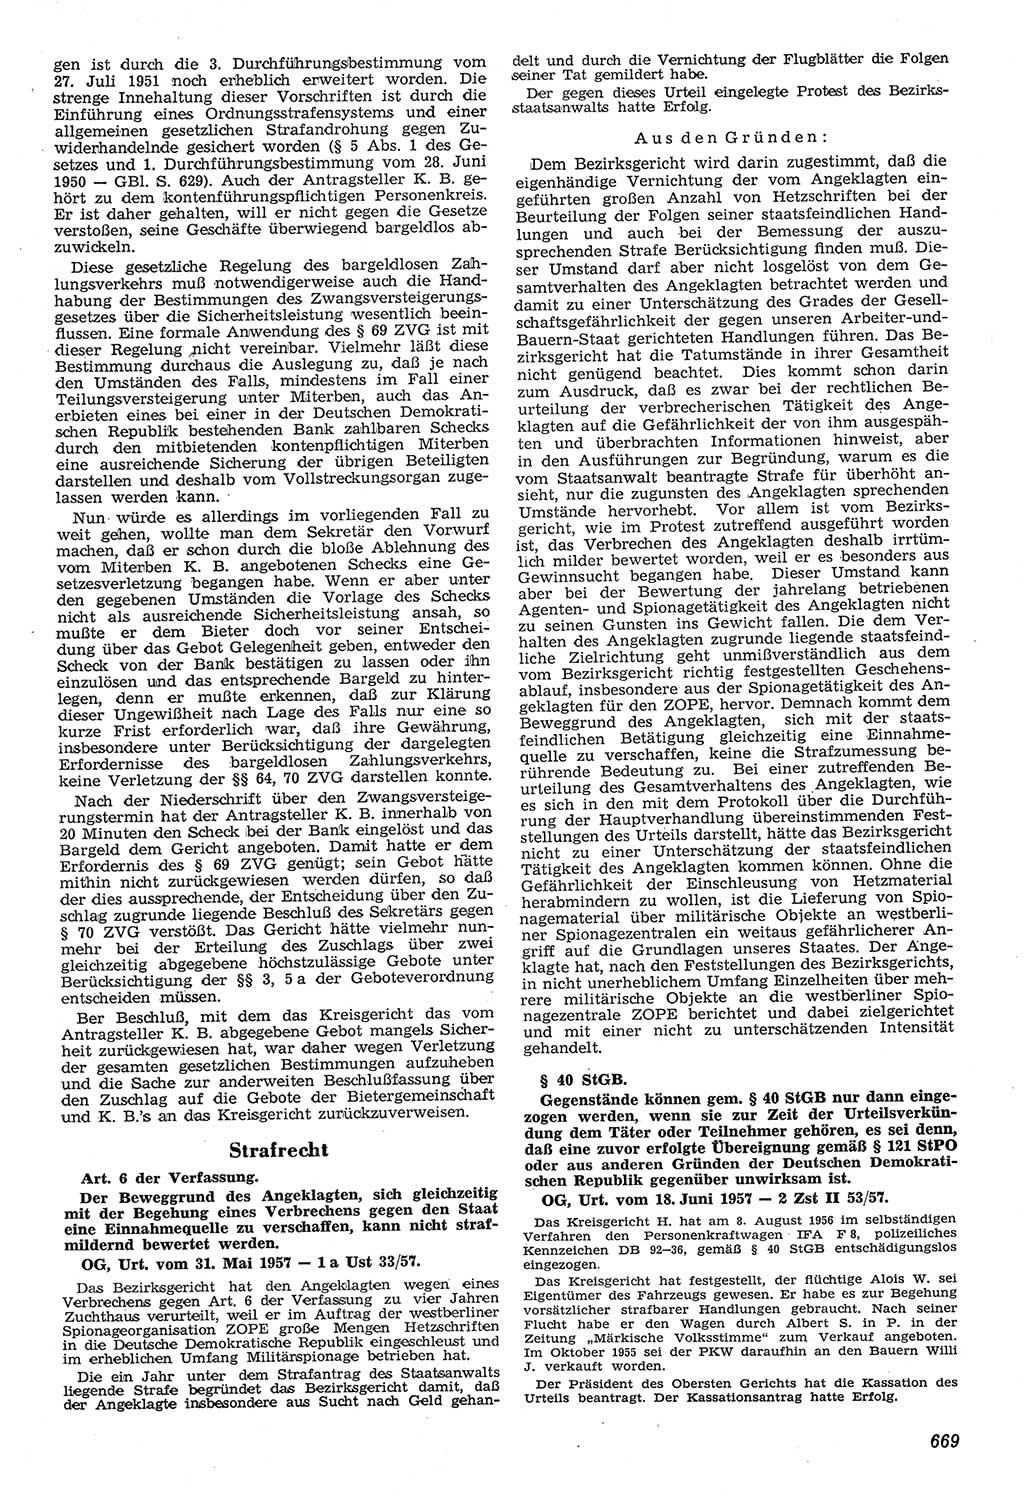 Neue Justiz (NJ), Zeitschrift für Recht und Rechtswissenschaft [Deutsche Demokratische Republik (DDR)], 11. Jahrgang 1957, Seite 669 (NJ DDR 1957, S. 669)